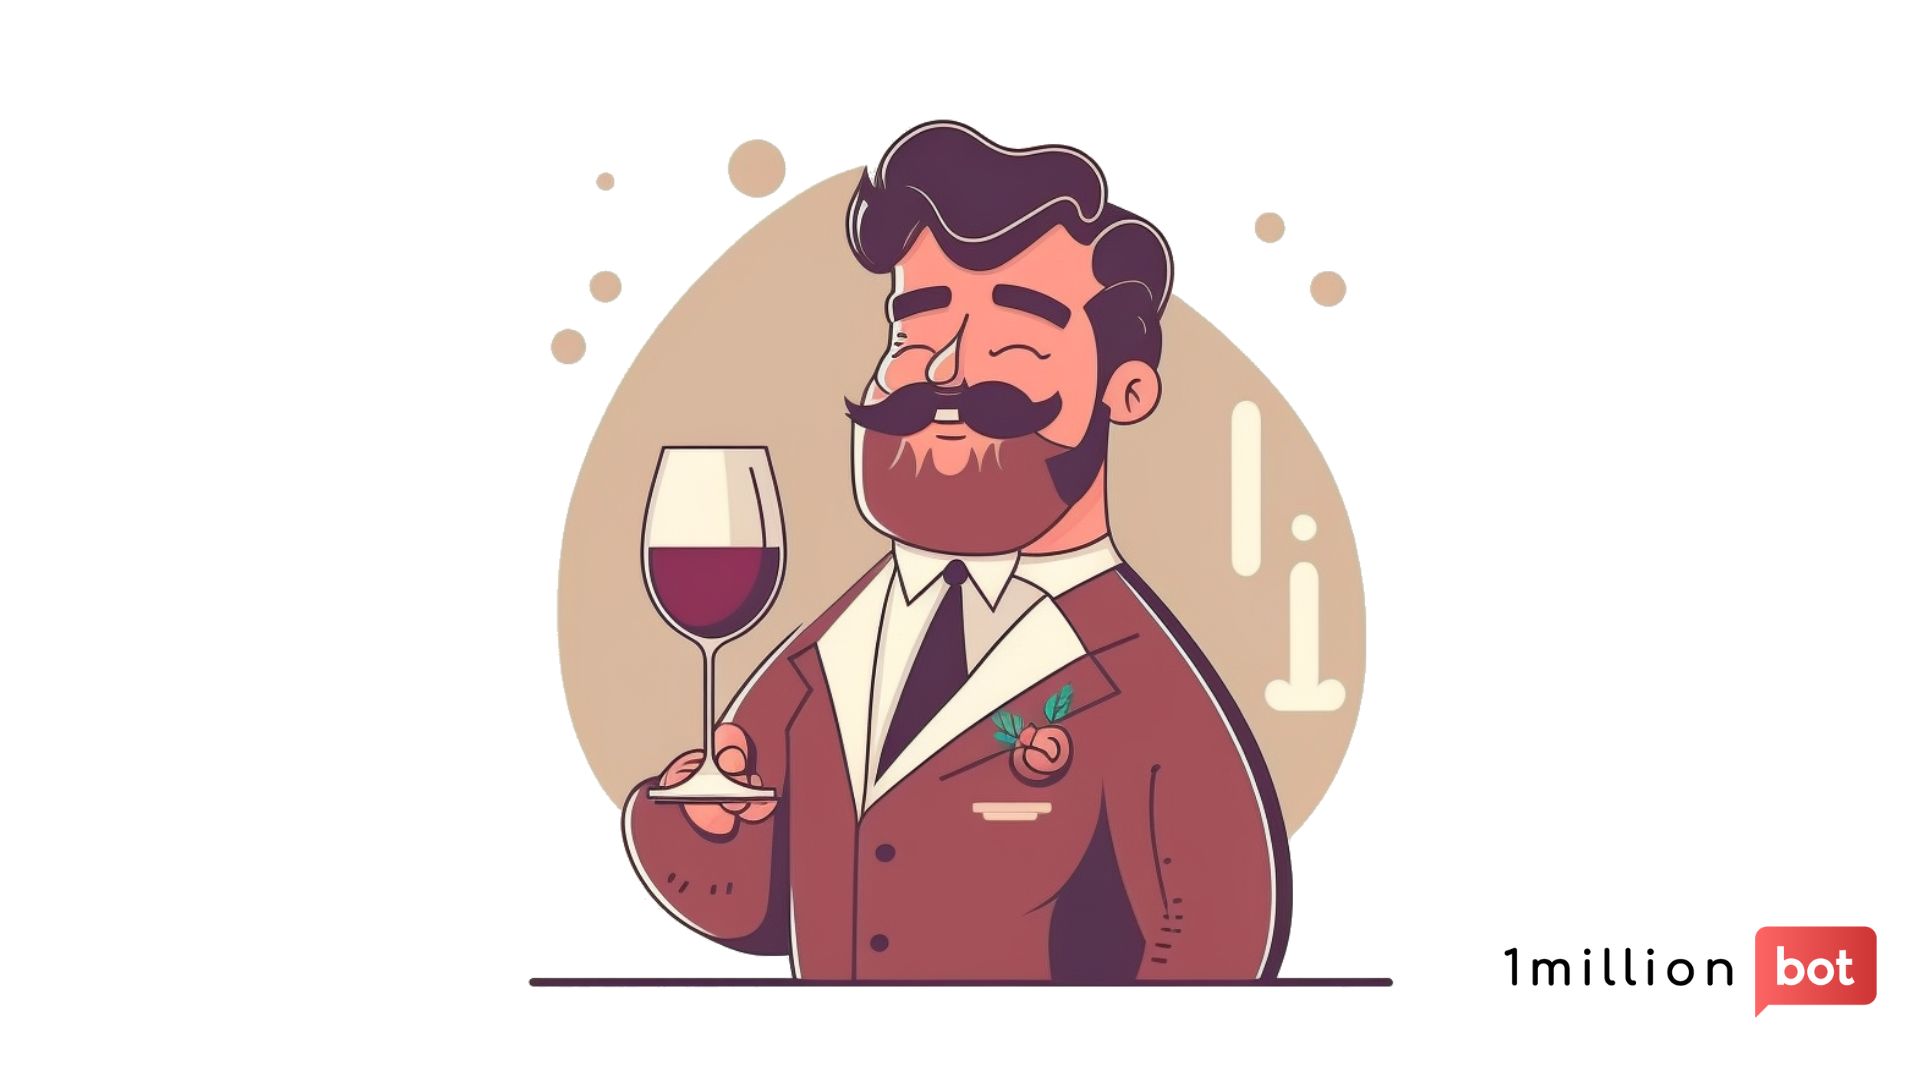 Conoce a Rafa, nuestro Asistente Virtual experto en vino Fondillón